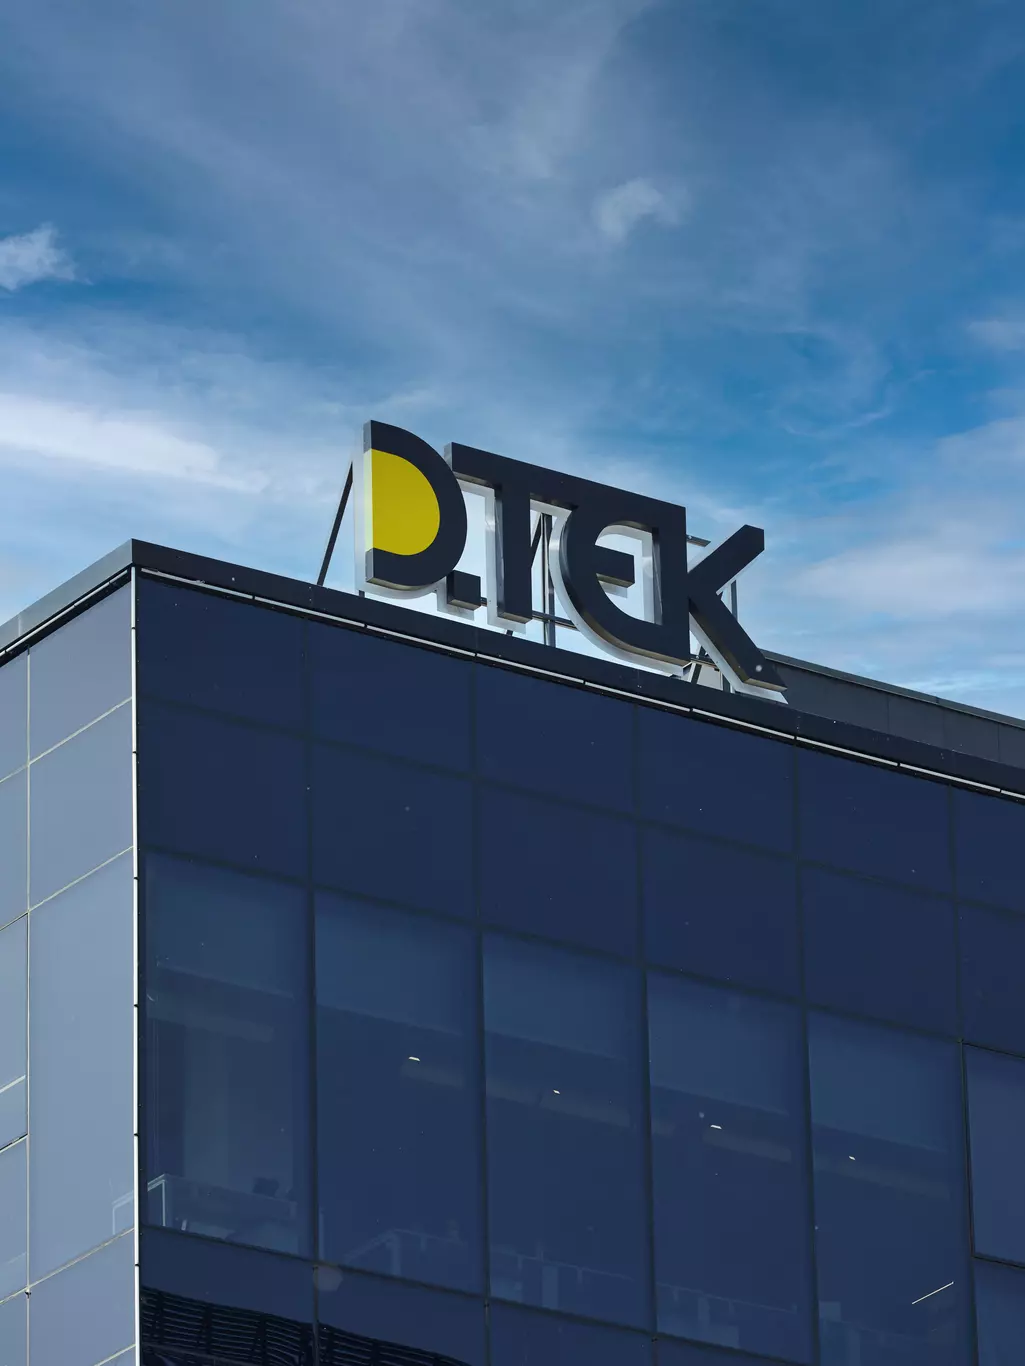 Image library / DTEK logo, office